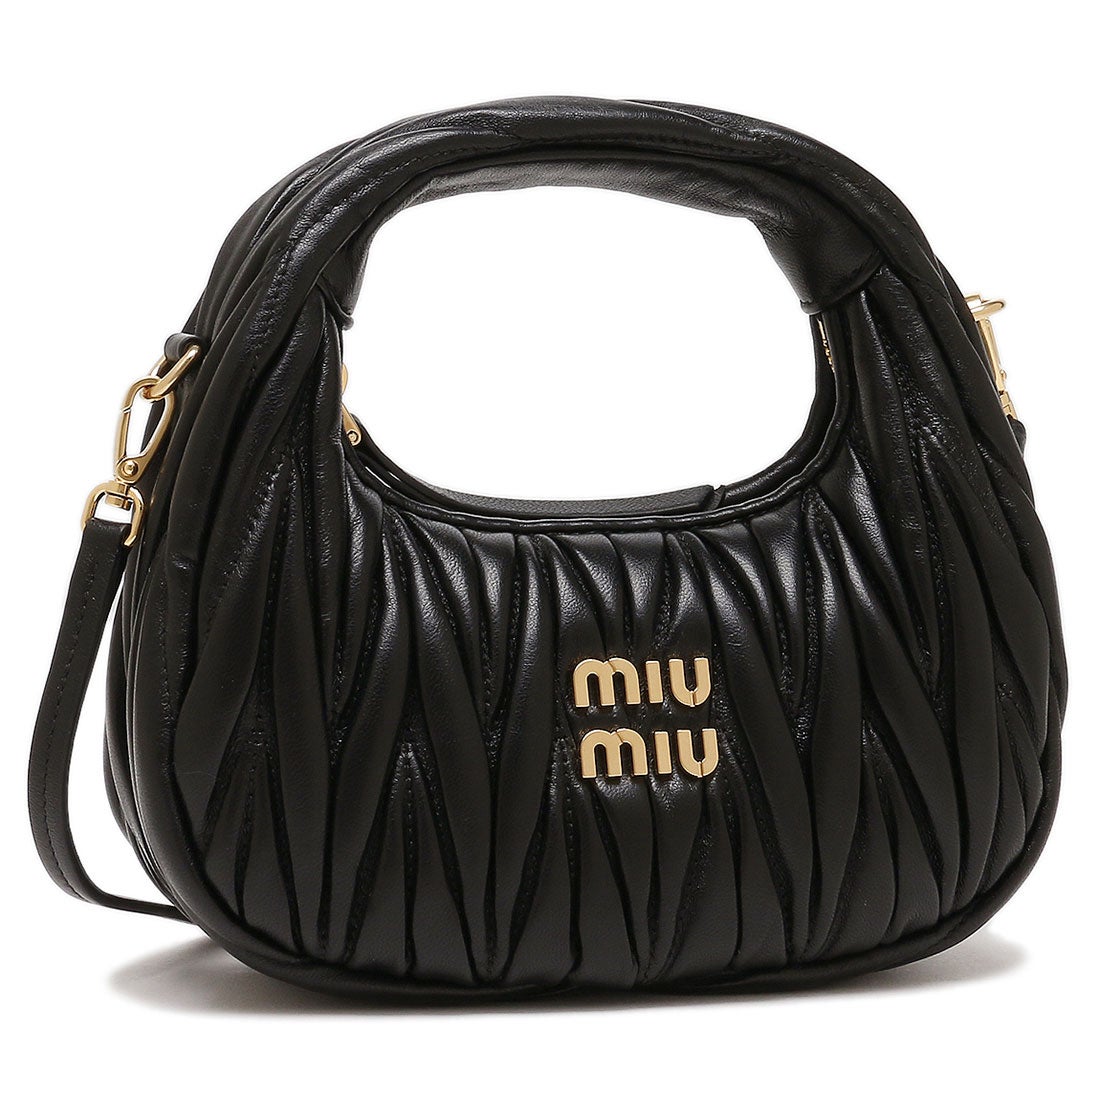 ミュウミュウ Miu Miu ハンドバッグ ショルダーバッグ ワンダーマテラッセレザー ホーボーミニバッグ ブラック レディース Miu Miu  5BP078 N88 F0002 OOO WANDER MATELASSE （BLACK）